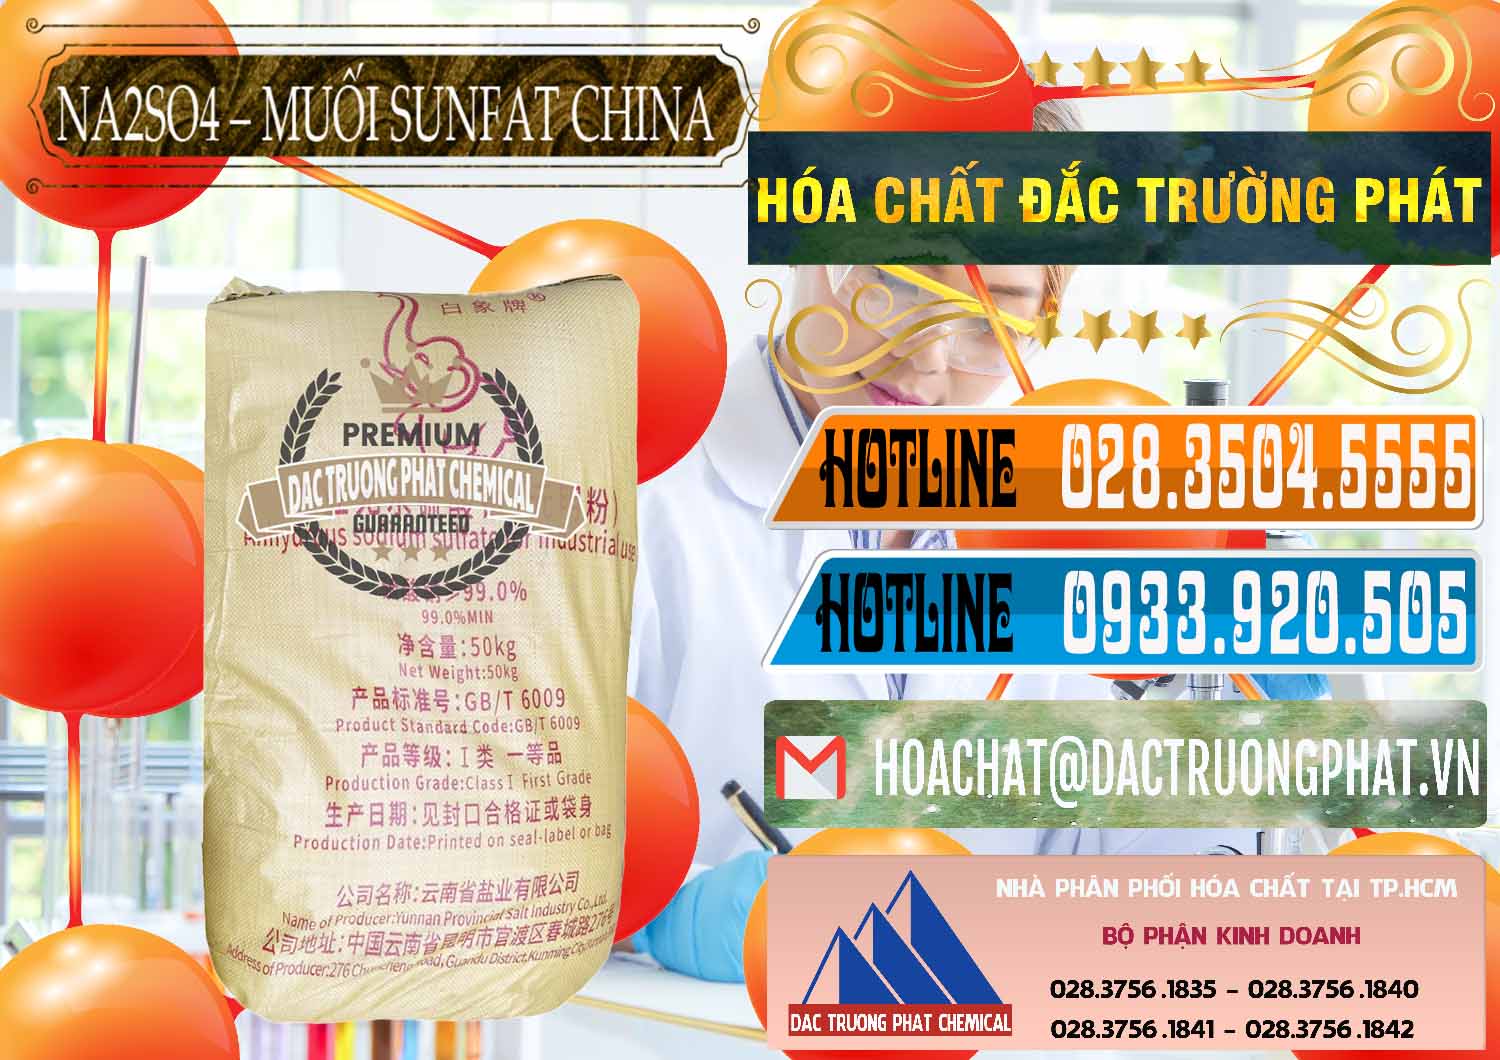 Đơn vị chuyên kinh doanh & bán Sodium Sulphate - Muối Sunfat Na2SO4 Logo Con Voi Trung Quốc China - 0409 - Công ty nhập khẩu - phân phối hóa chất tại TP.HCM - stmp.net